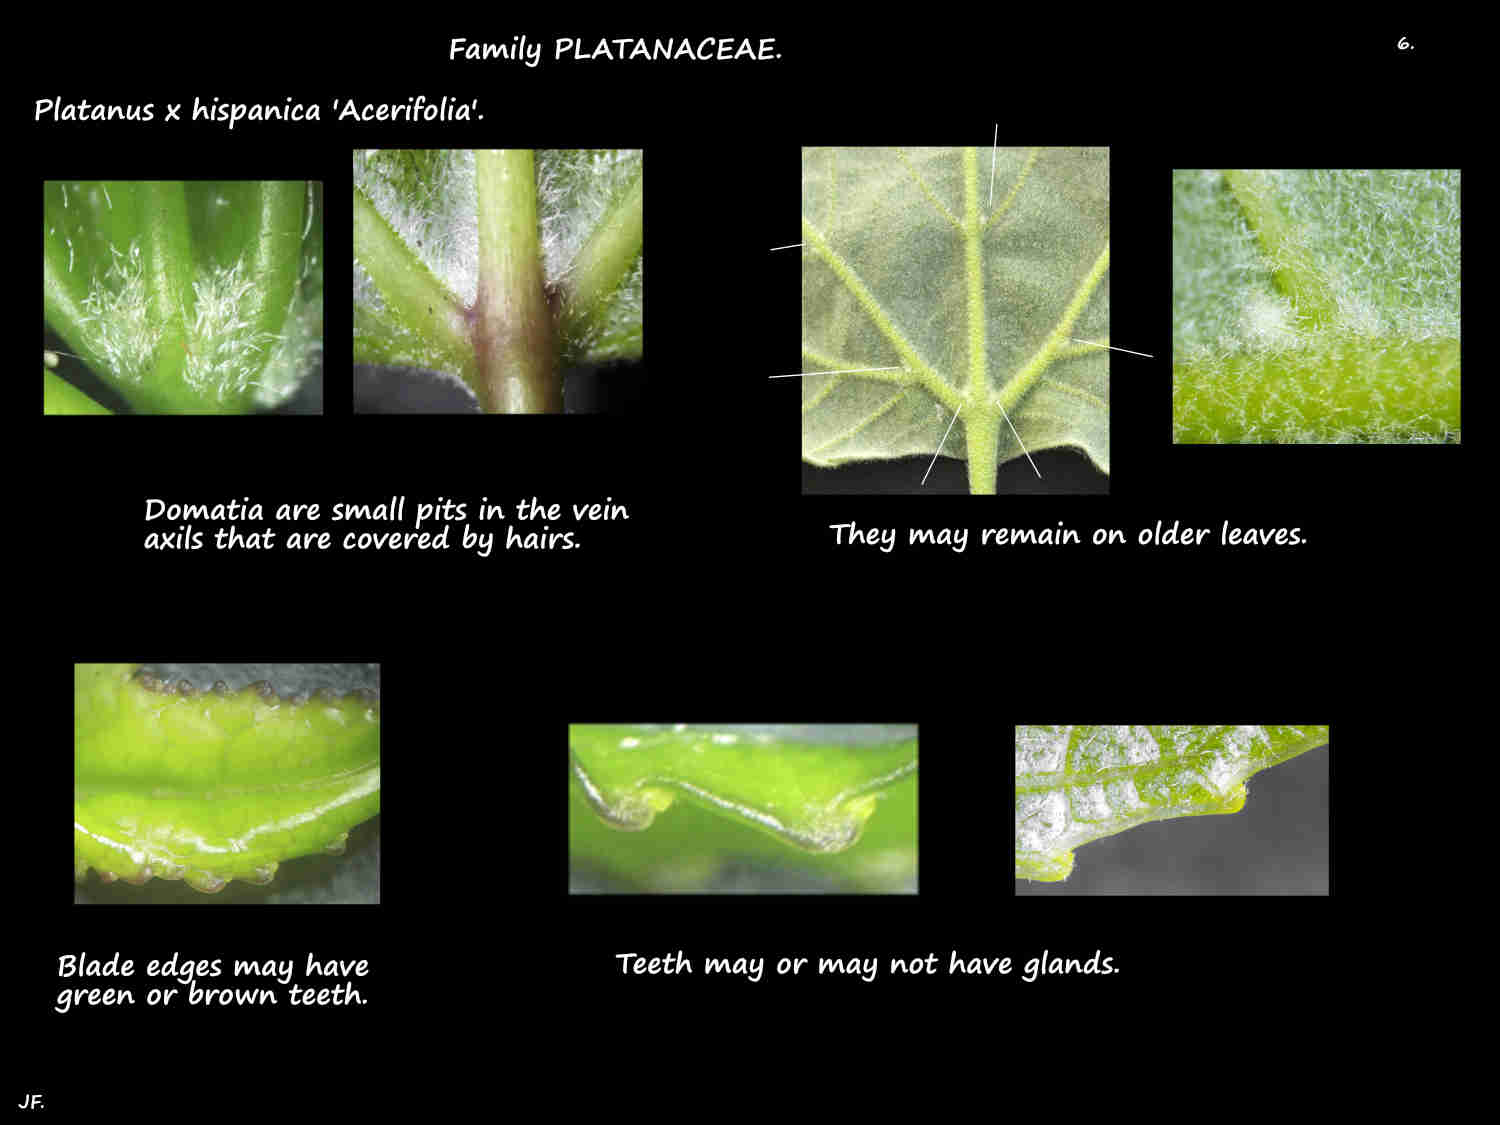 6 Domatia & teeth on Platanus x hispanica leaves